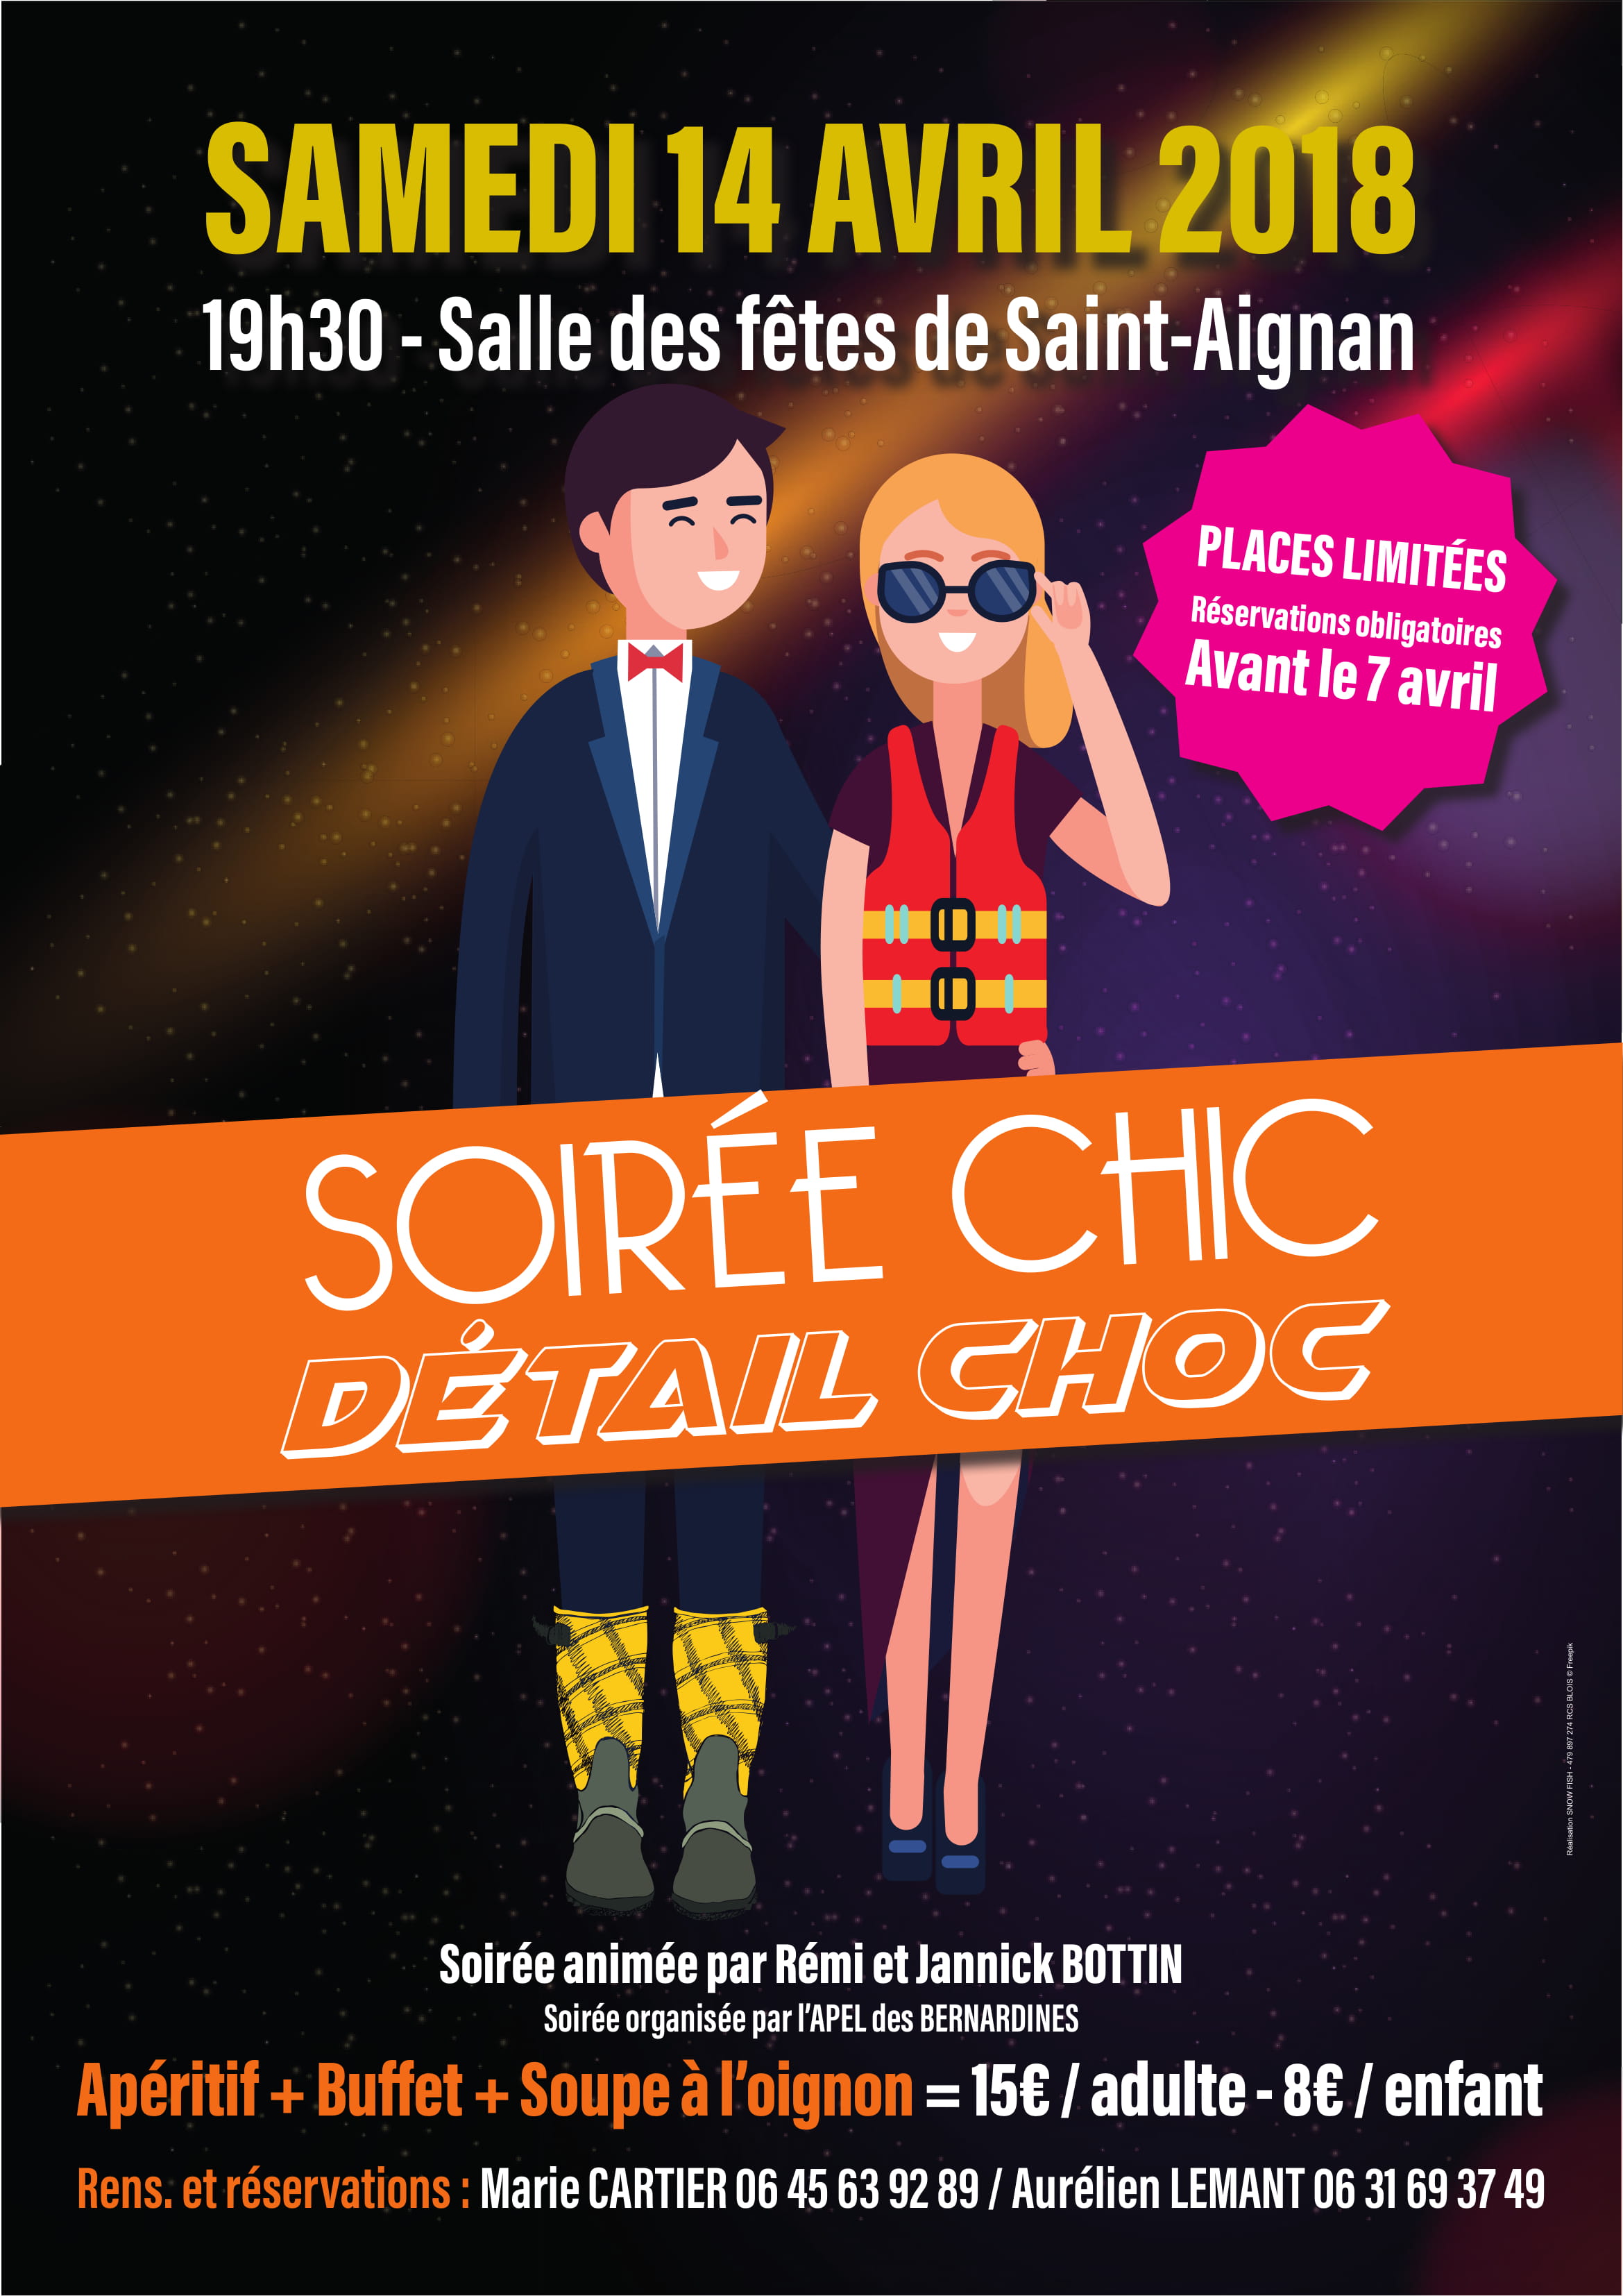 Soirée Chic - Détail Choc - Saint-Aignan - le 14/04/2018 - Agenda